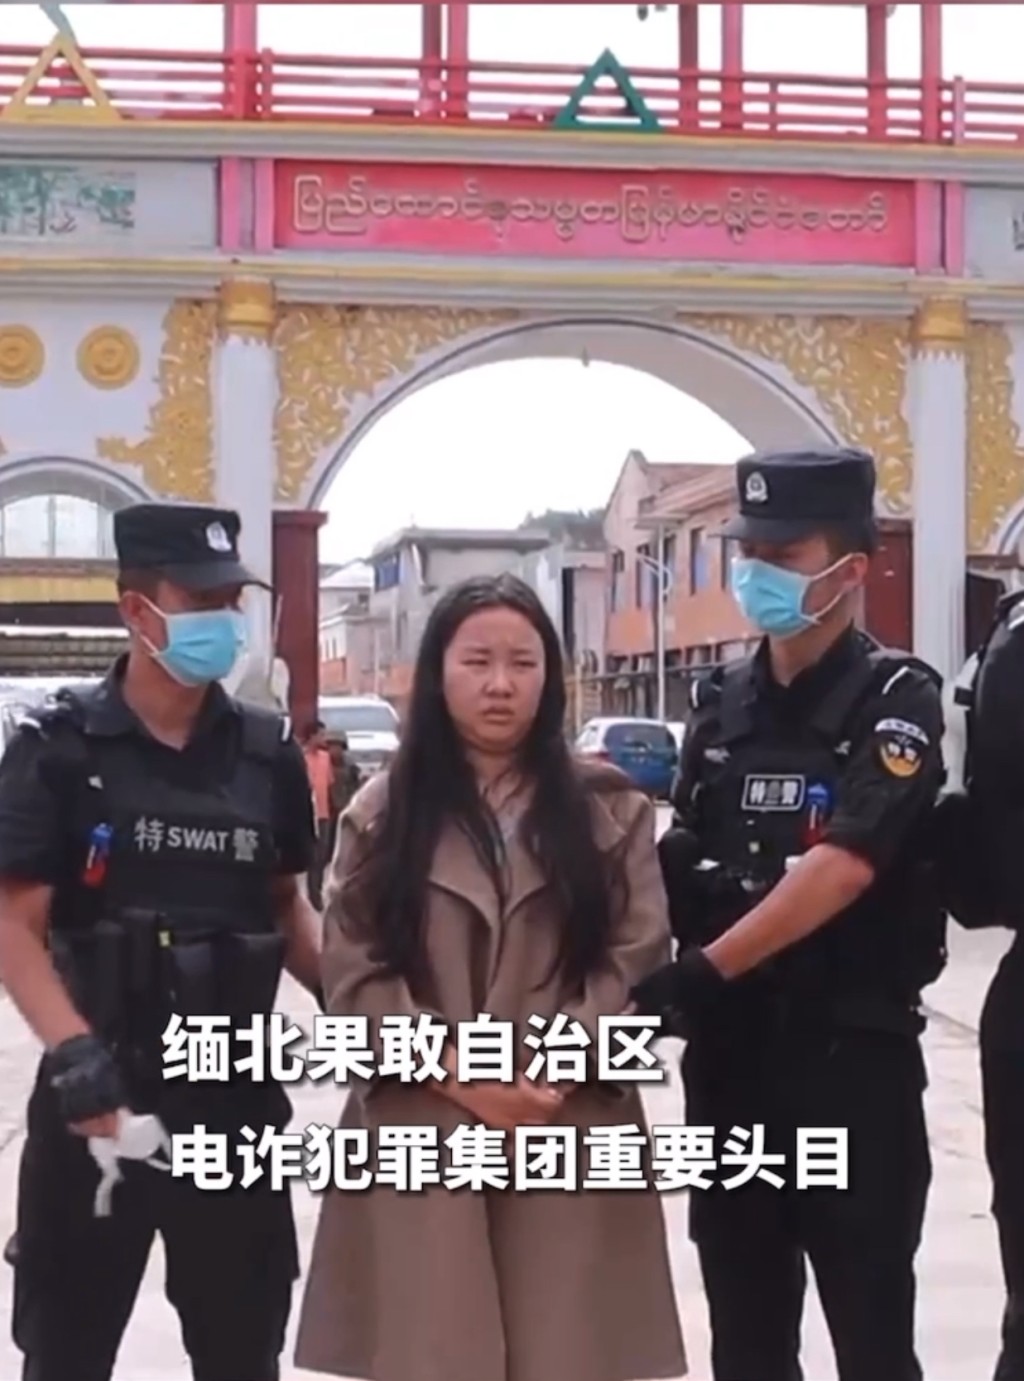 中國特警接收明珍珍。 央視影片截圖